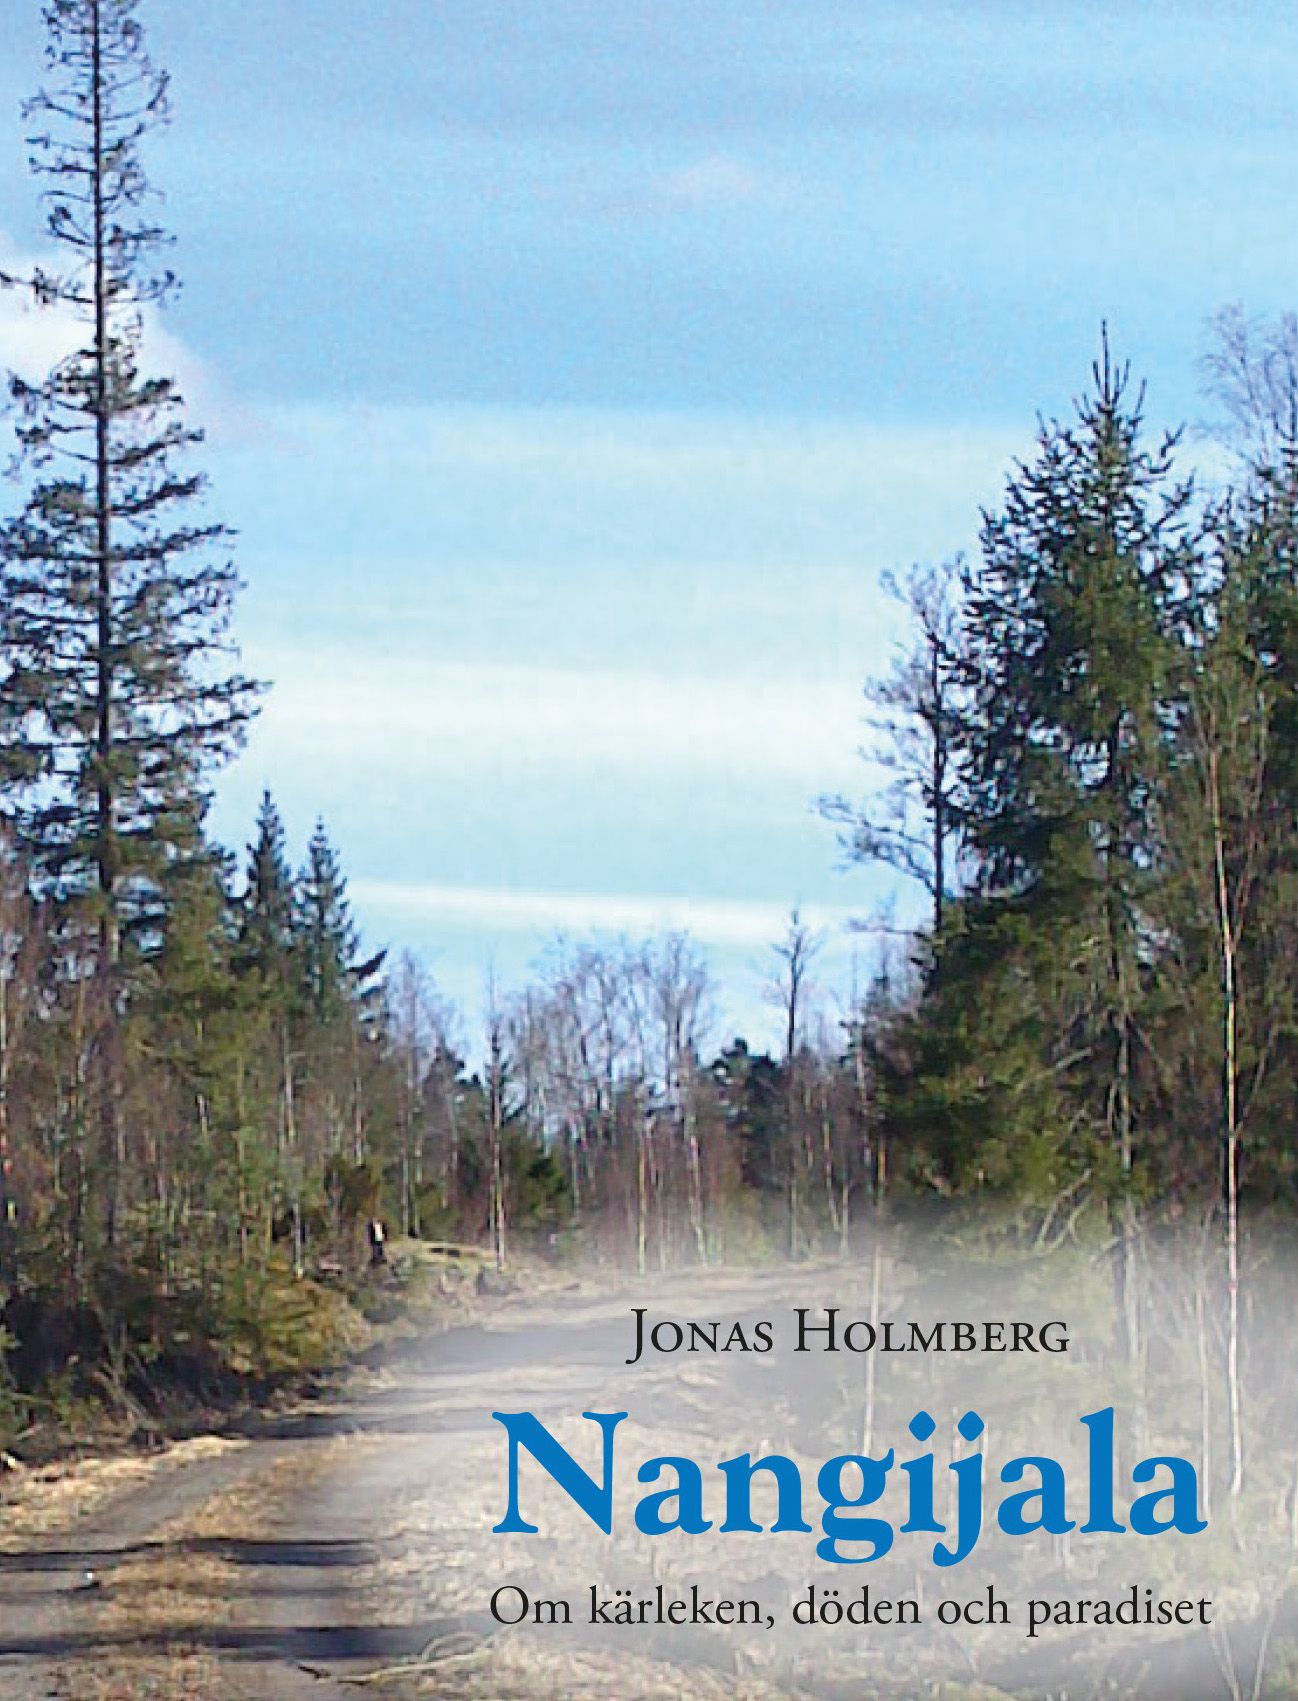 Nangijala - Om kärleken, döden och paradiset, e-bog af Jonas Holmberg